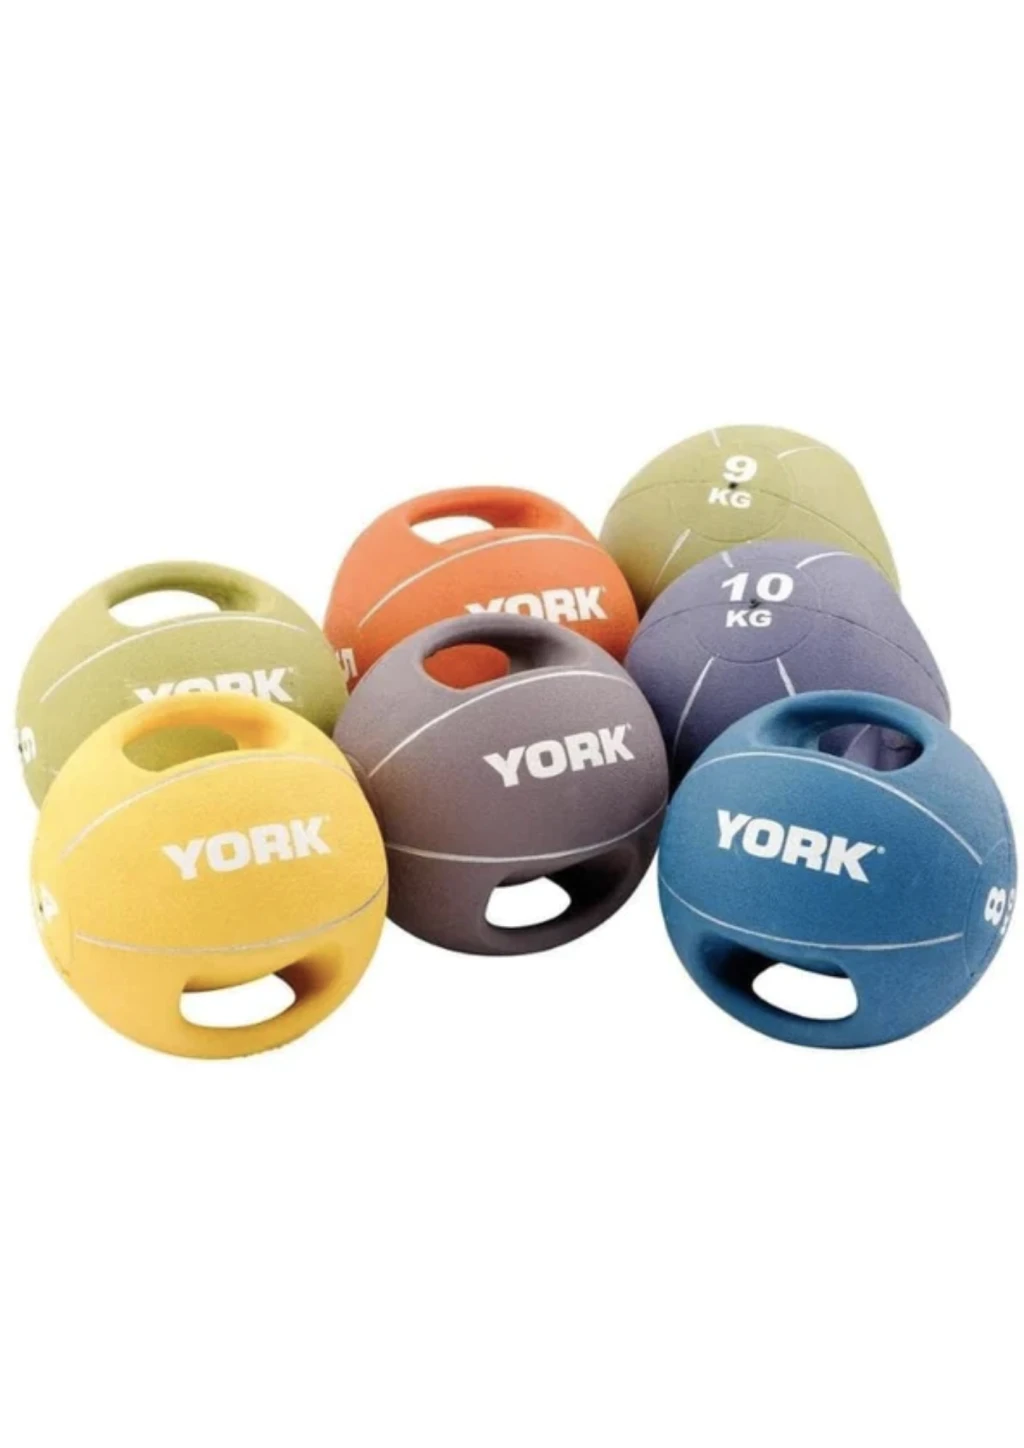 Мяч медбол 9 кг York Fitness с двумя ручками зеленый